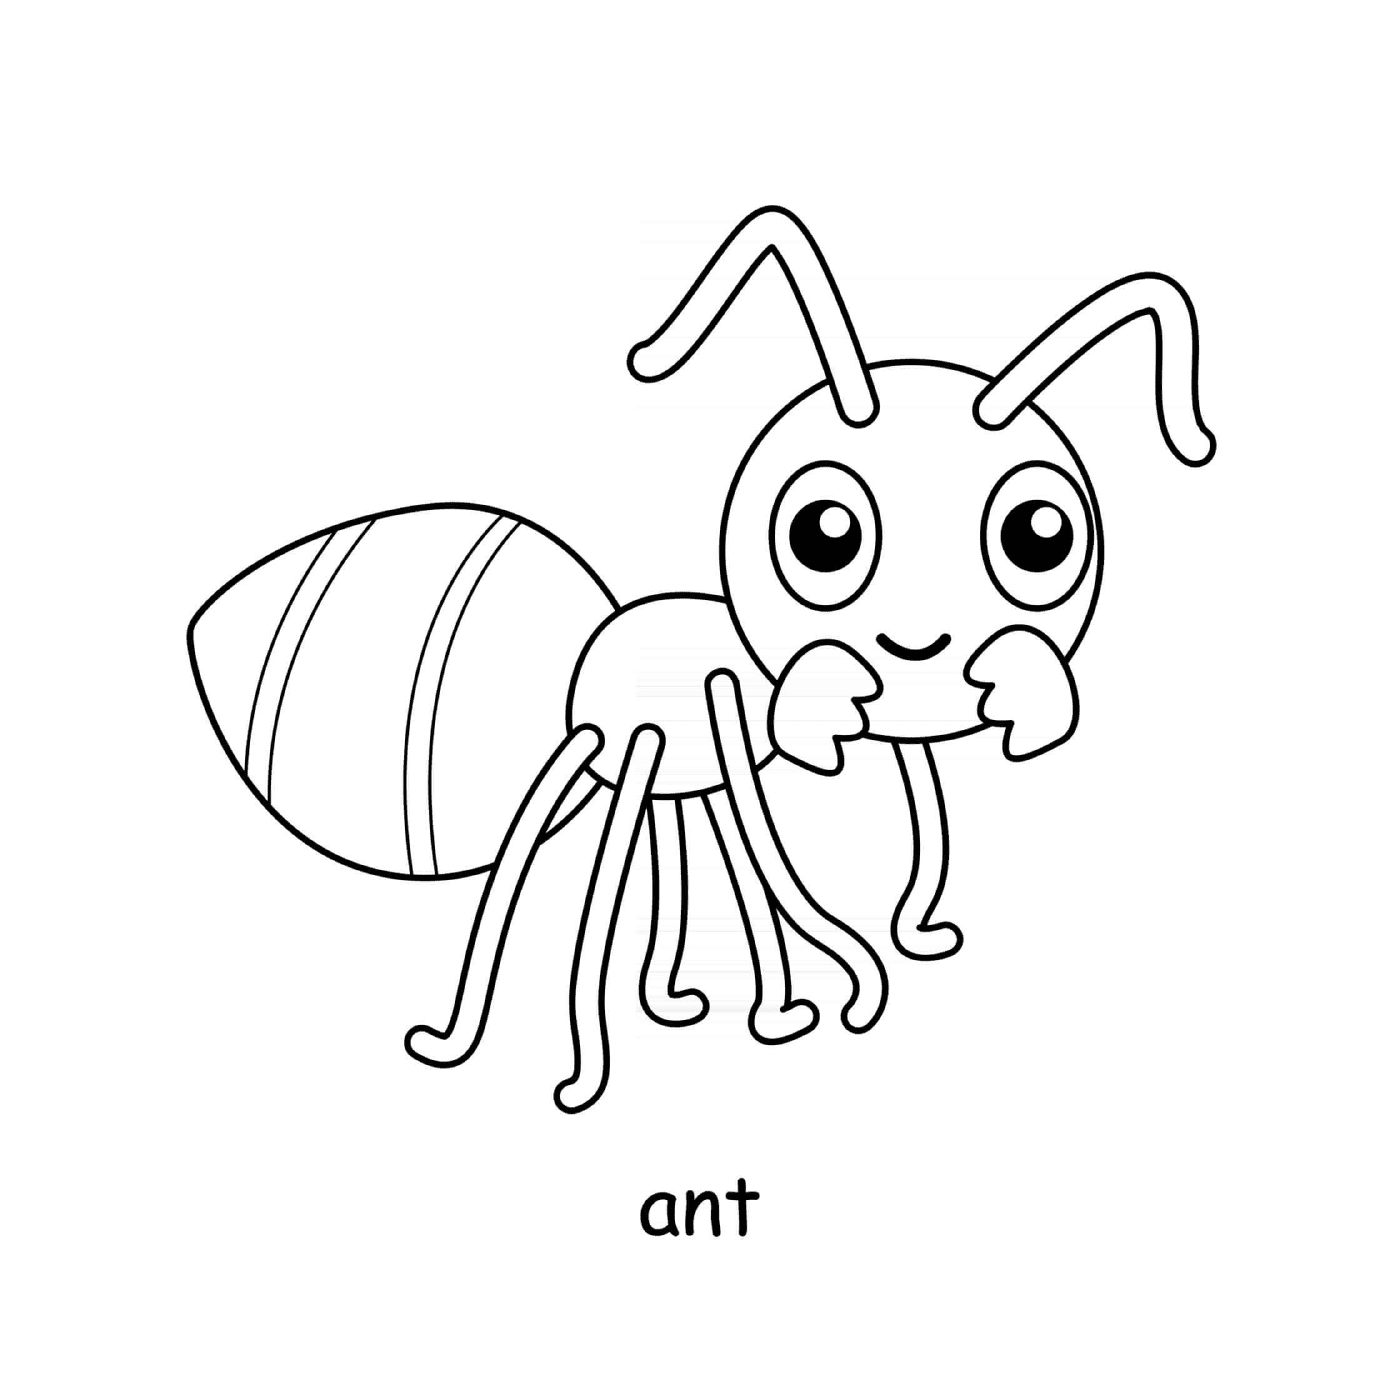  蚂蚁 